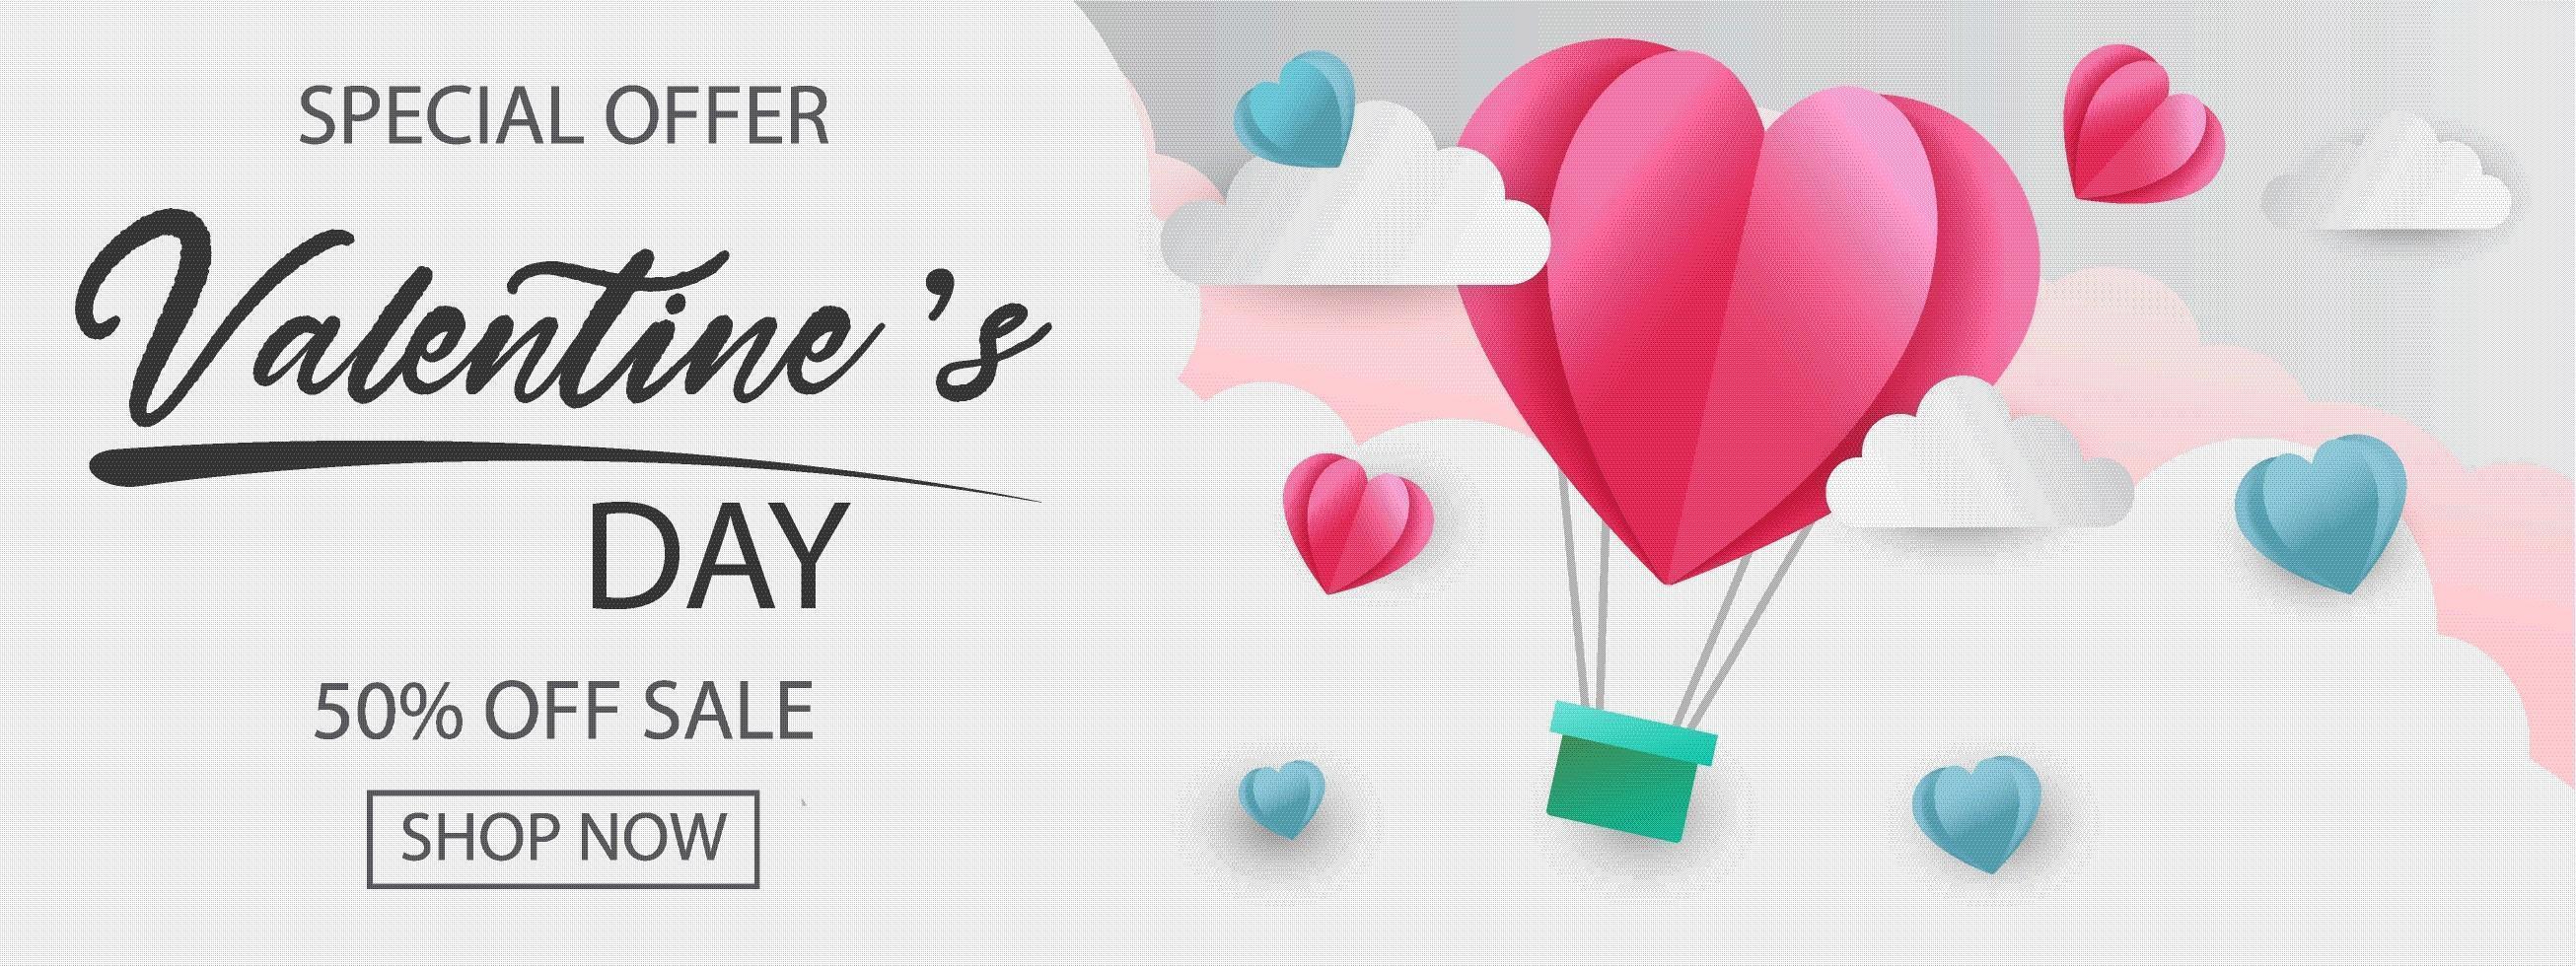 banner de oferta especial do dia dos namorados com balão em forma de coração nas nuvens vetor